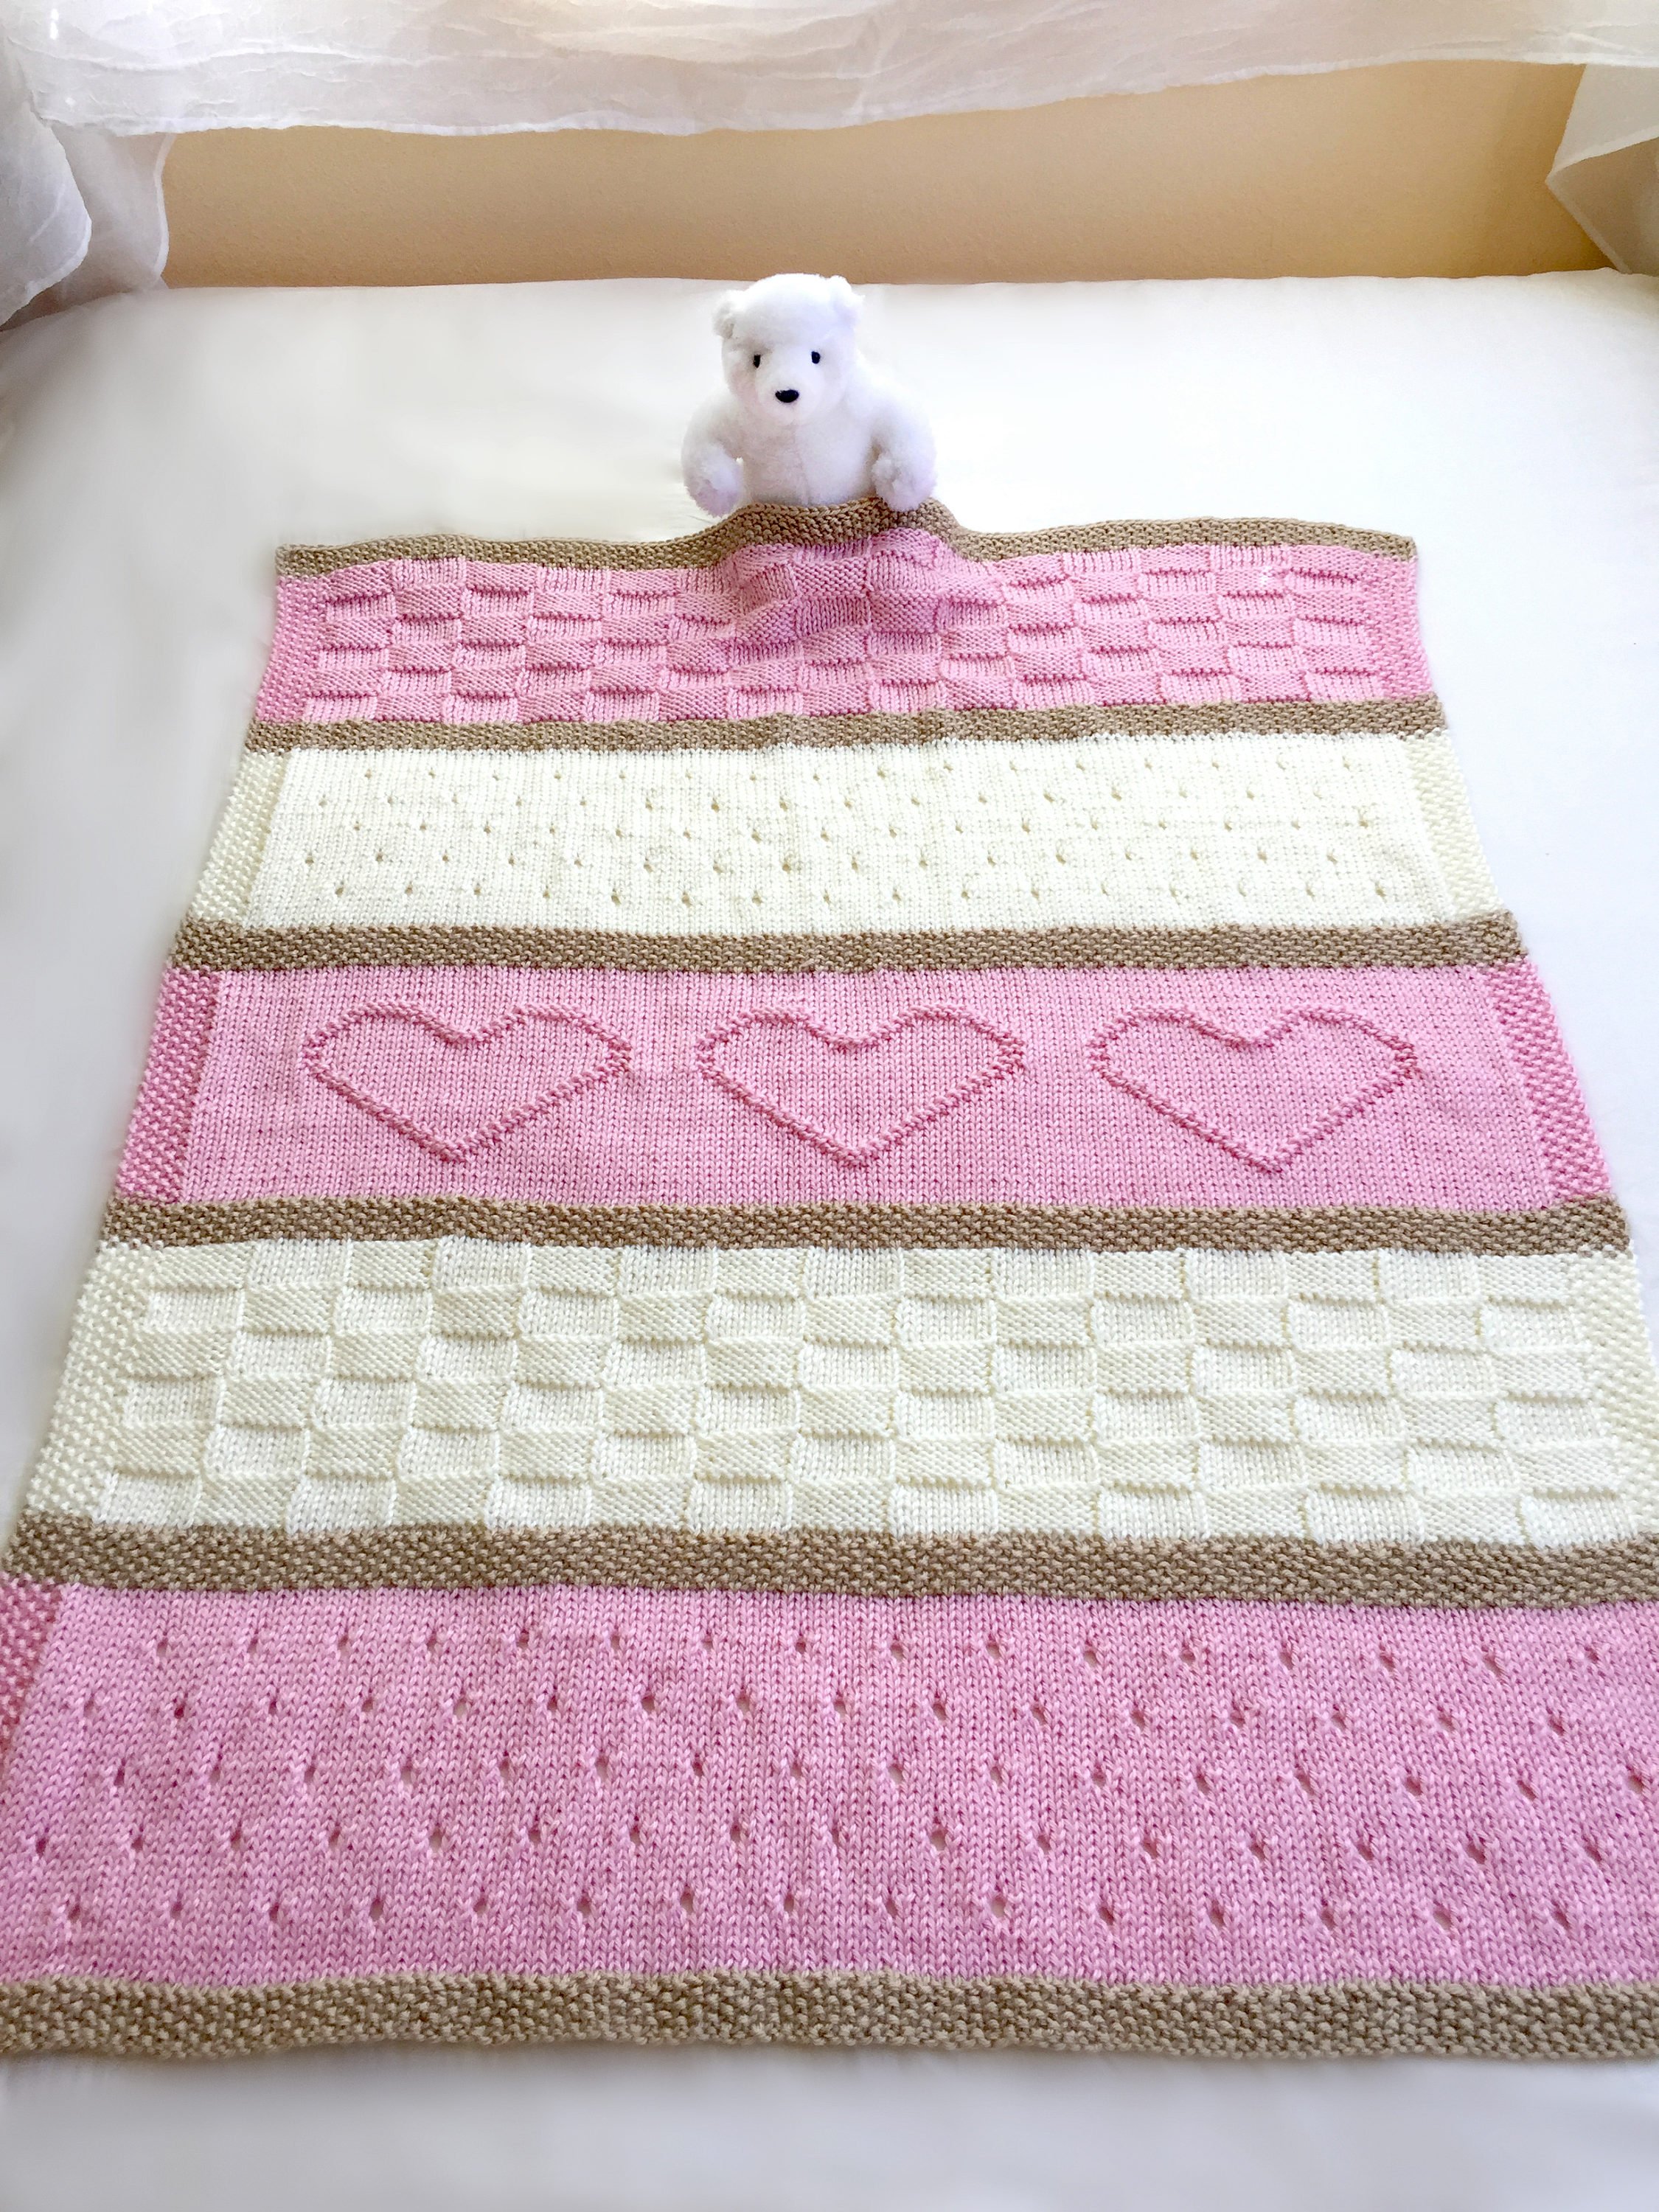 Baby Blanket Pattern, Knit Baby Blanket Pattern, Heart Baby Blanket Pattern, Crib Blanket